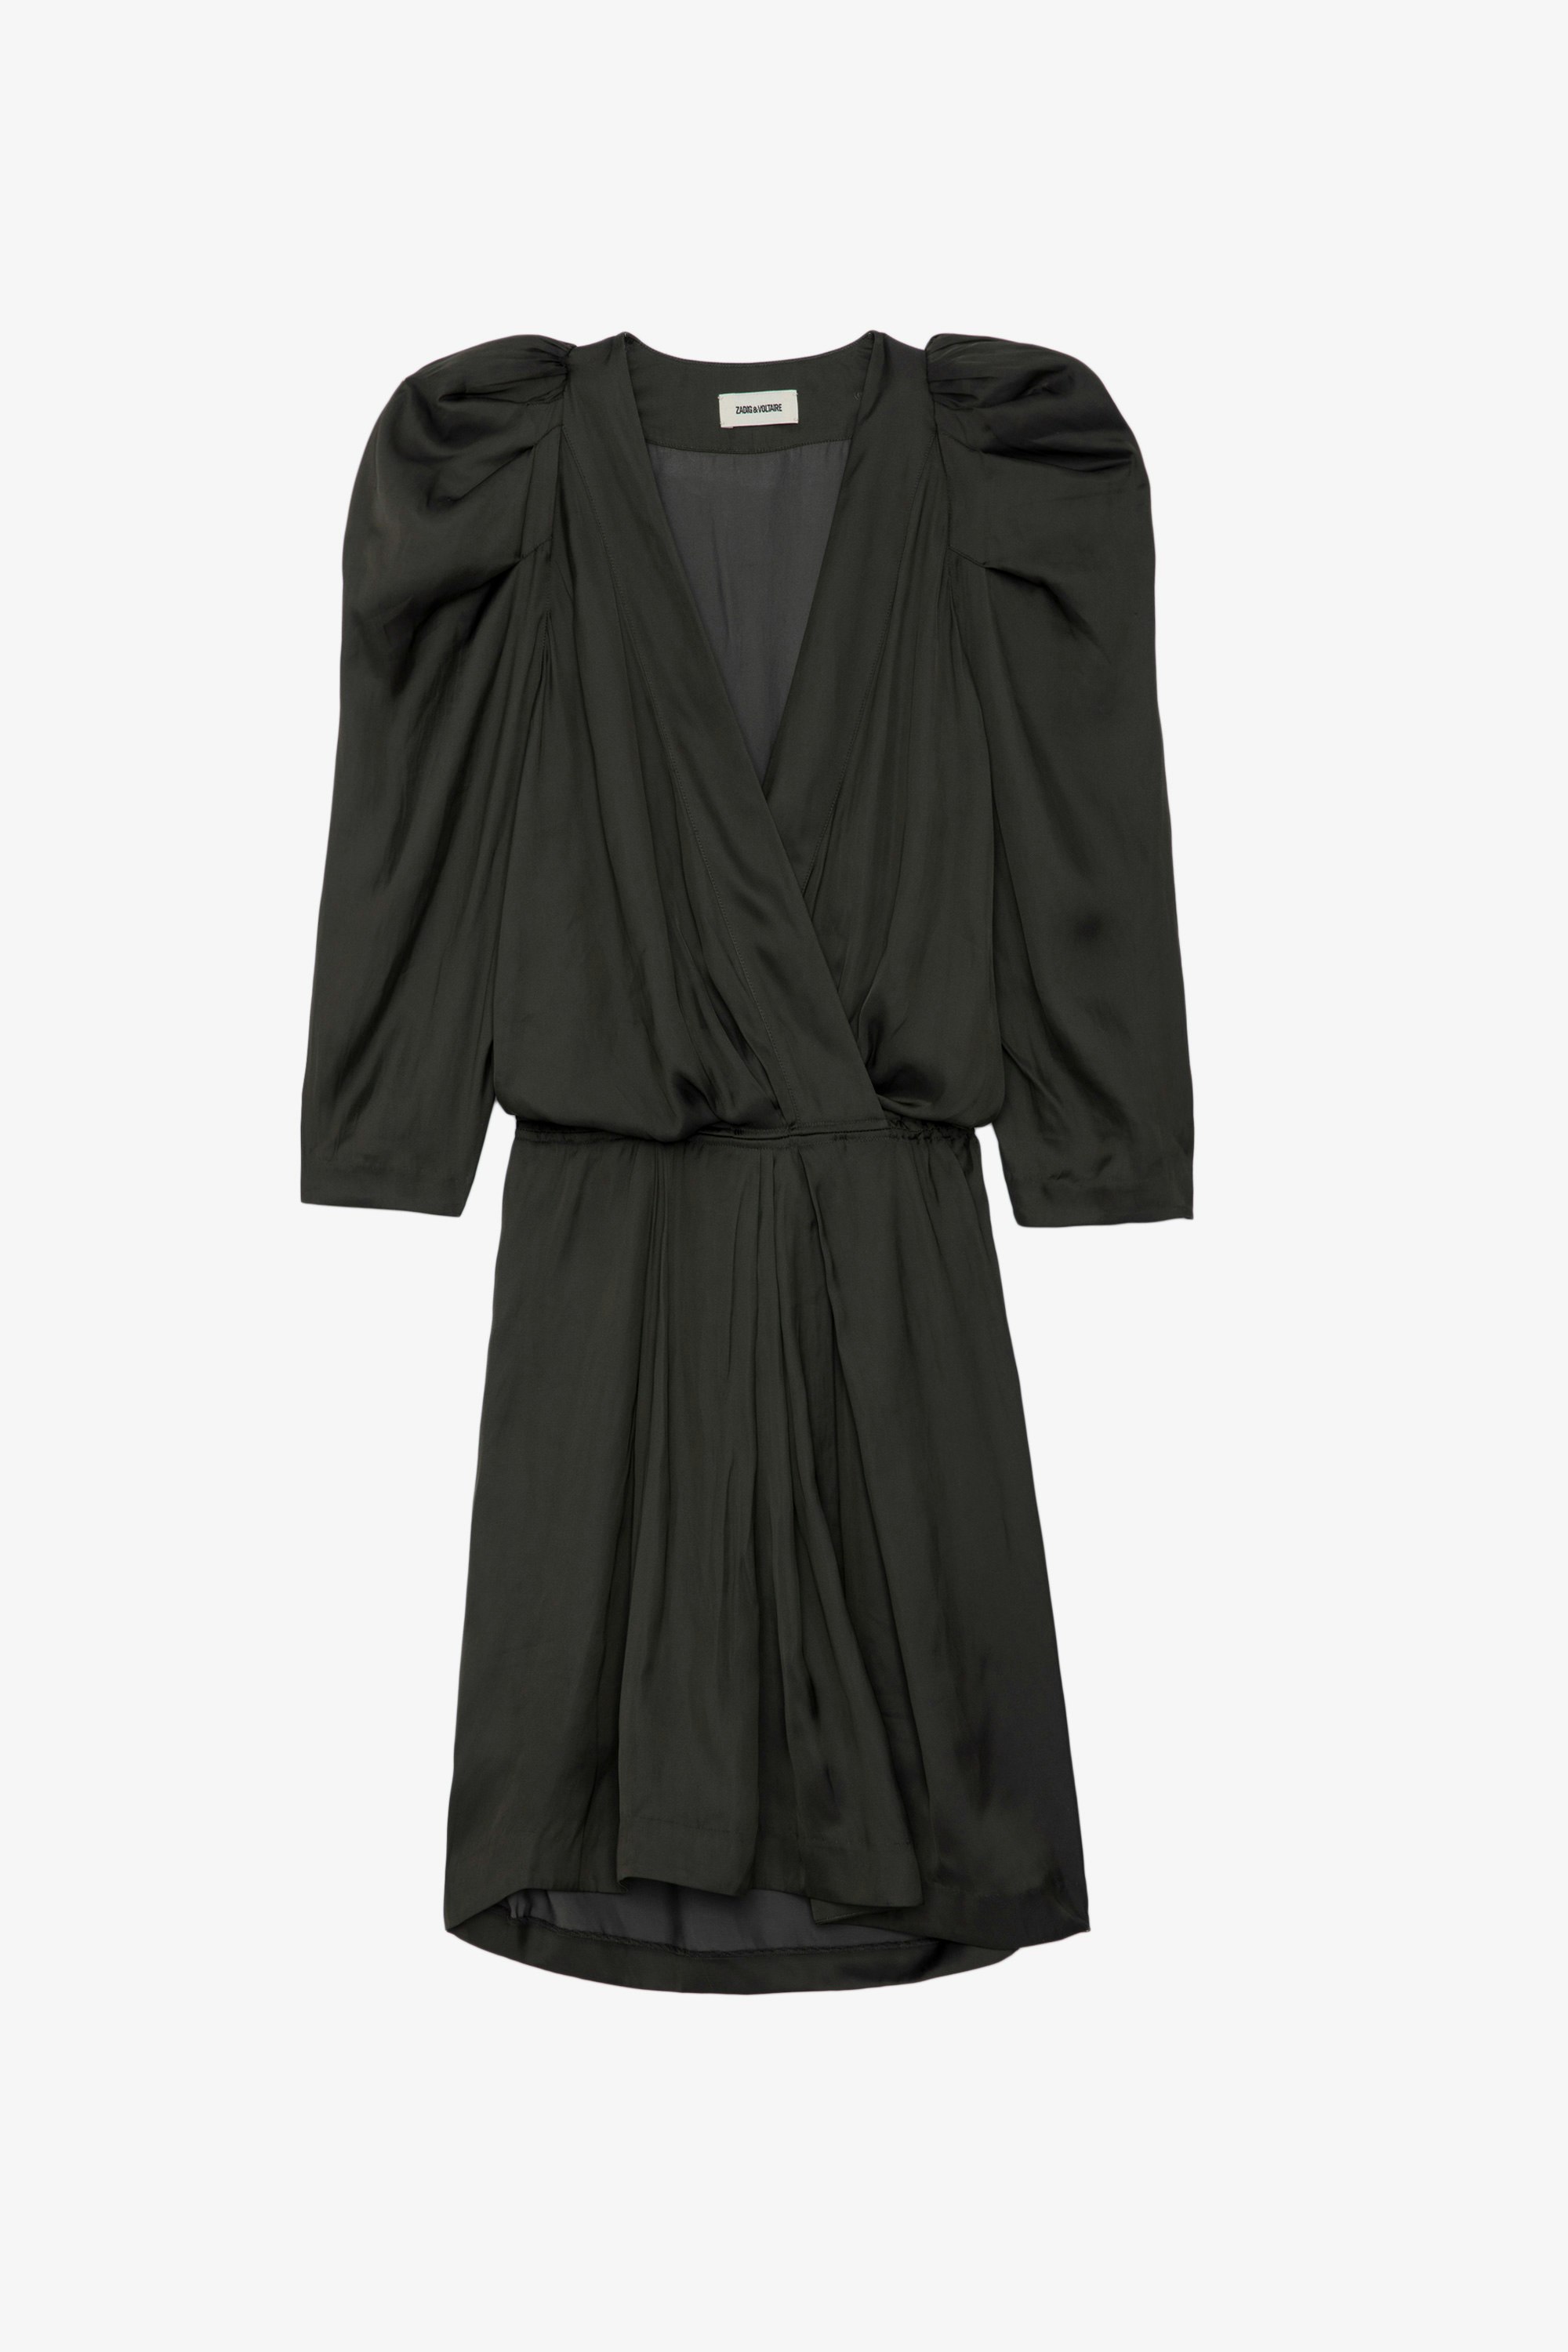 Vestido de Satén Ruz - Vestido negro corto de satén con mangas 3/4, cinturilla elástica y fruncidos en los hombros.